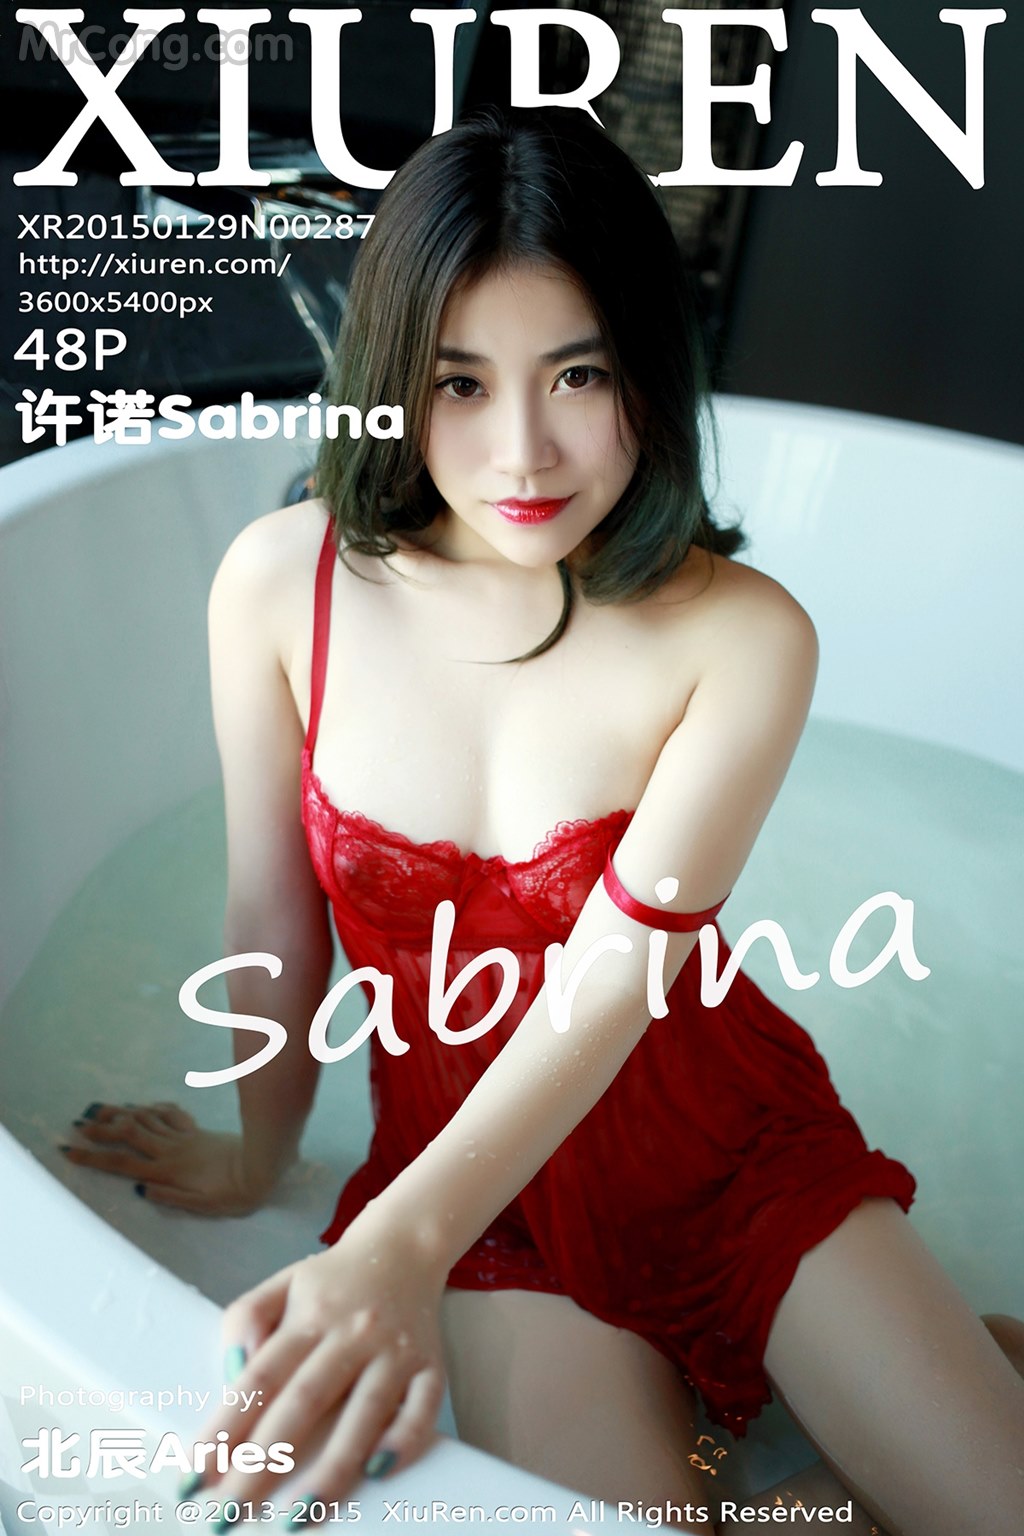 XIUREN No. 2287: Model Sabrina (许诺) (49 photos)